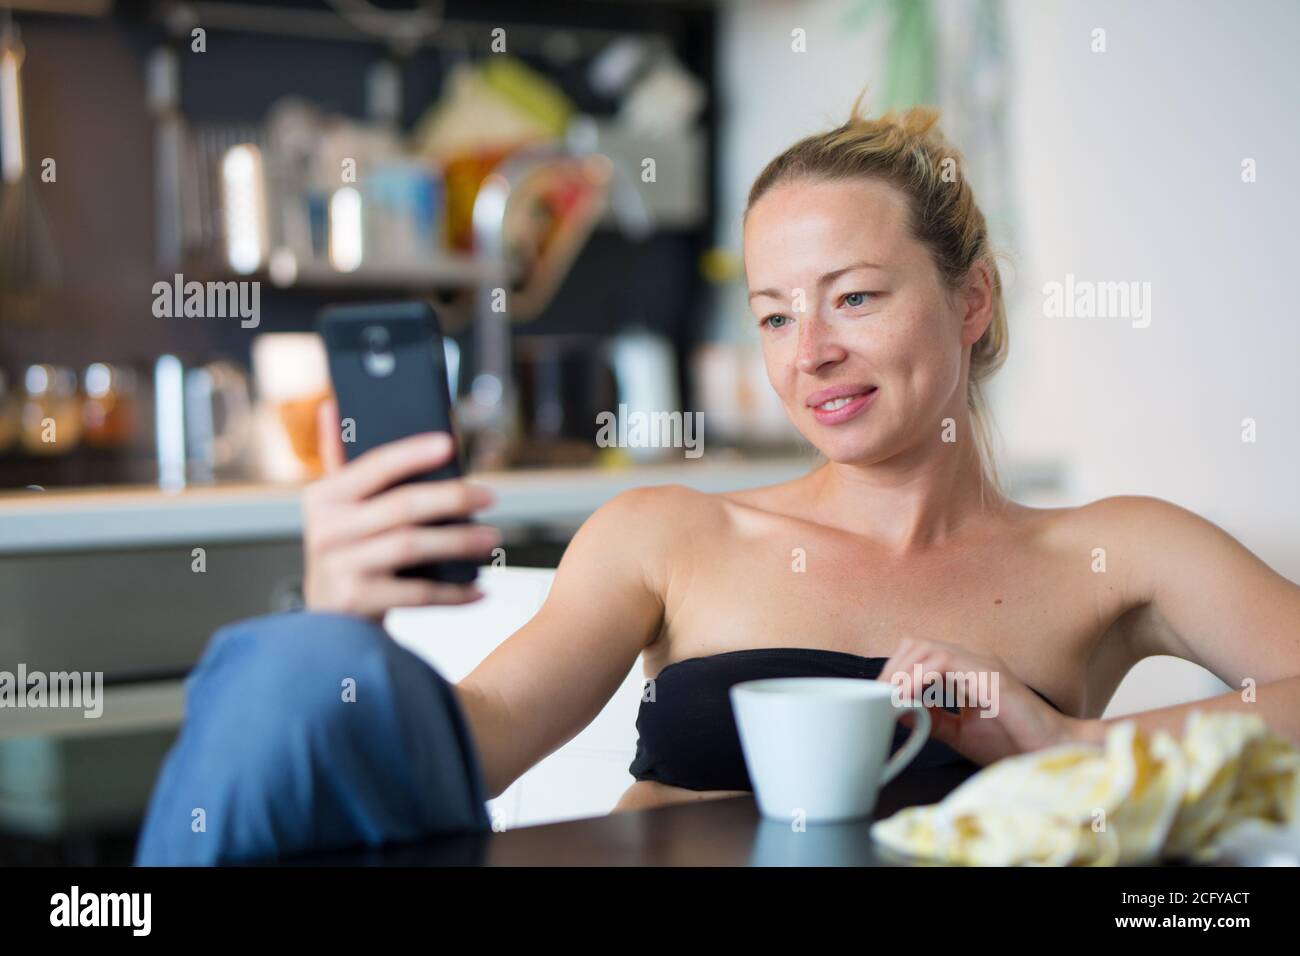 Giovane sorridente allegra donna soddisfatta all'interno della cucina domestica usando social media sul telefono cellulare per chattare e rimanere connessi con i suoi cari Foto Stock